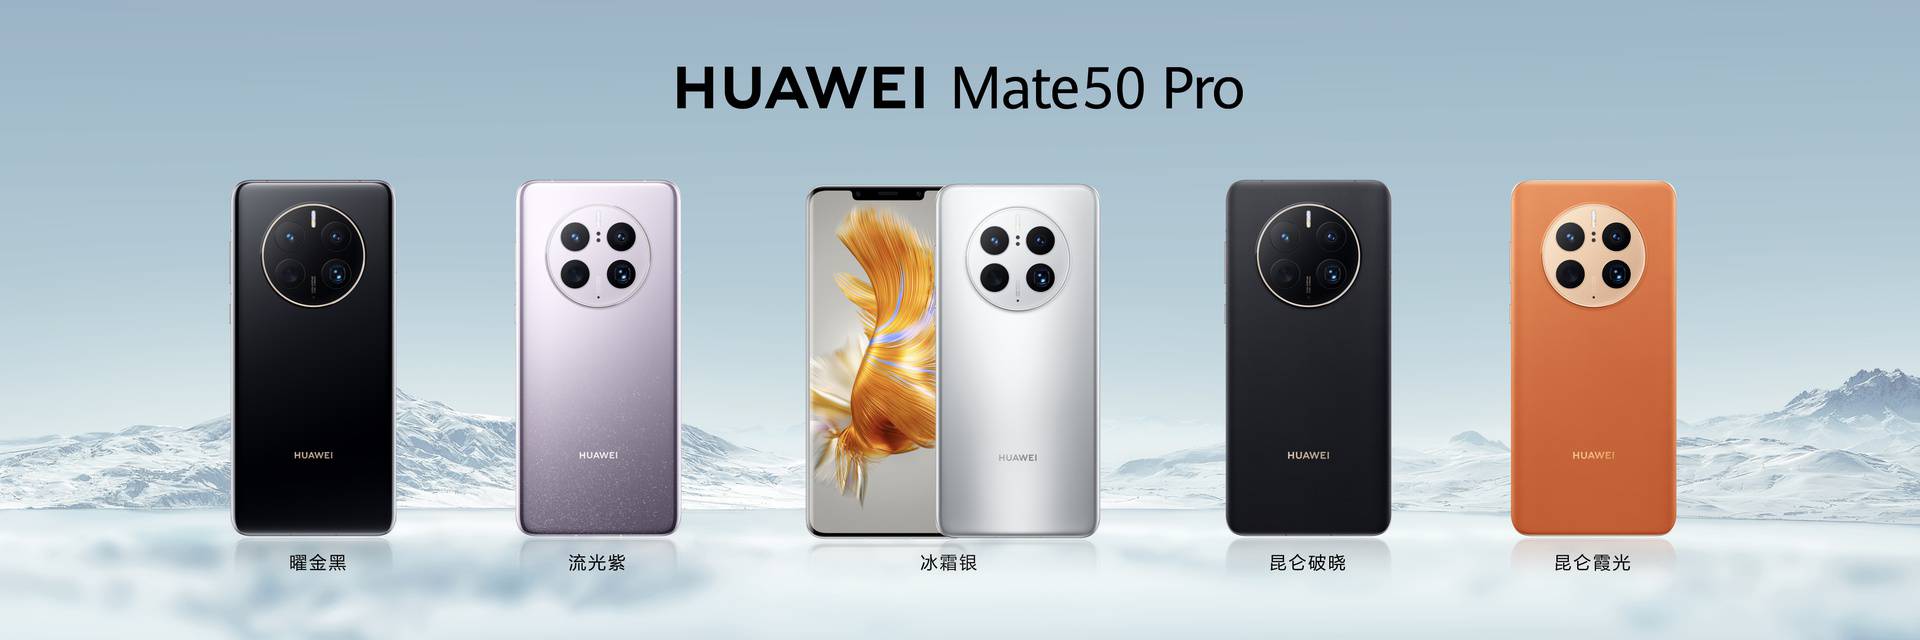 Isprobali smo novi Huawei Mate 50 Pro i kakav je suživot s Googleovim aplikacijama